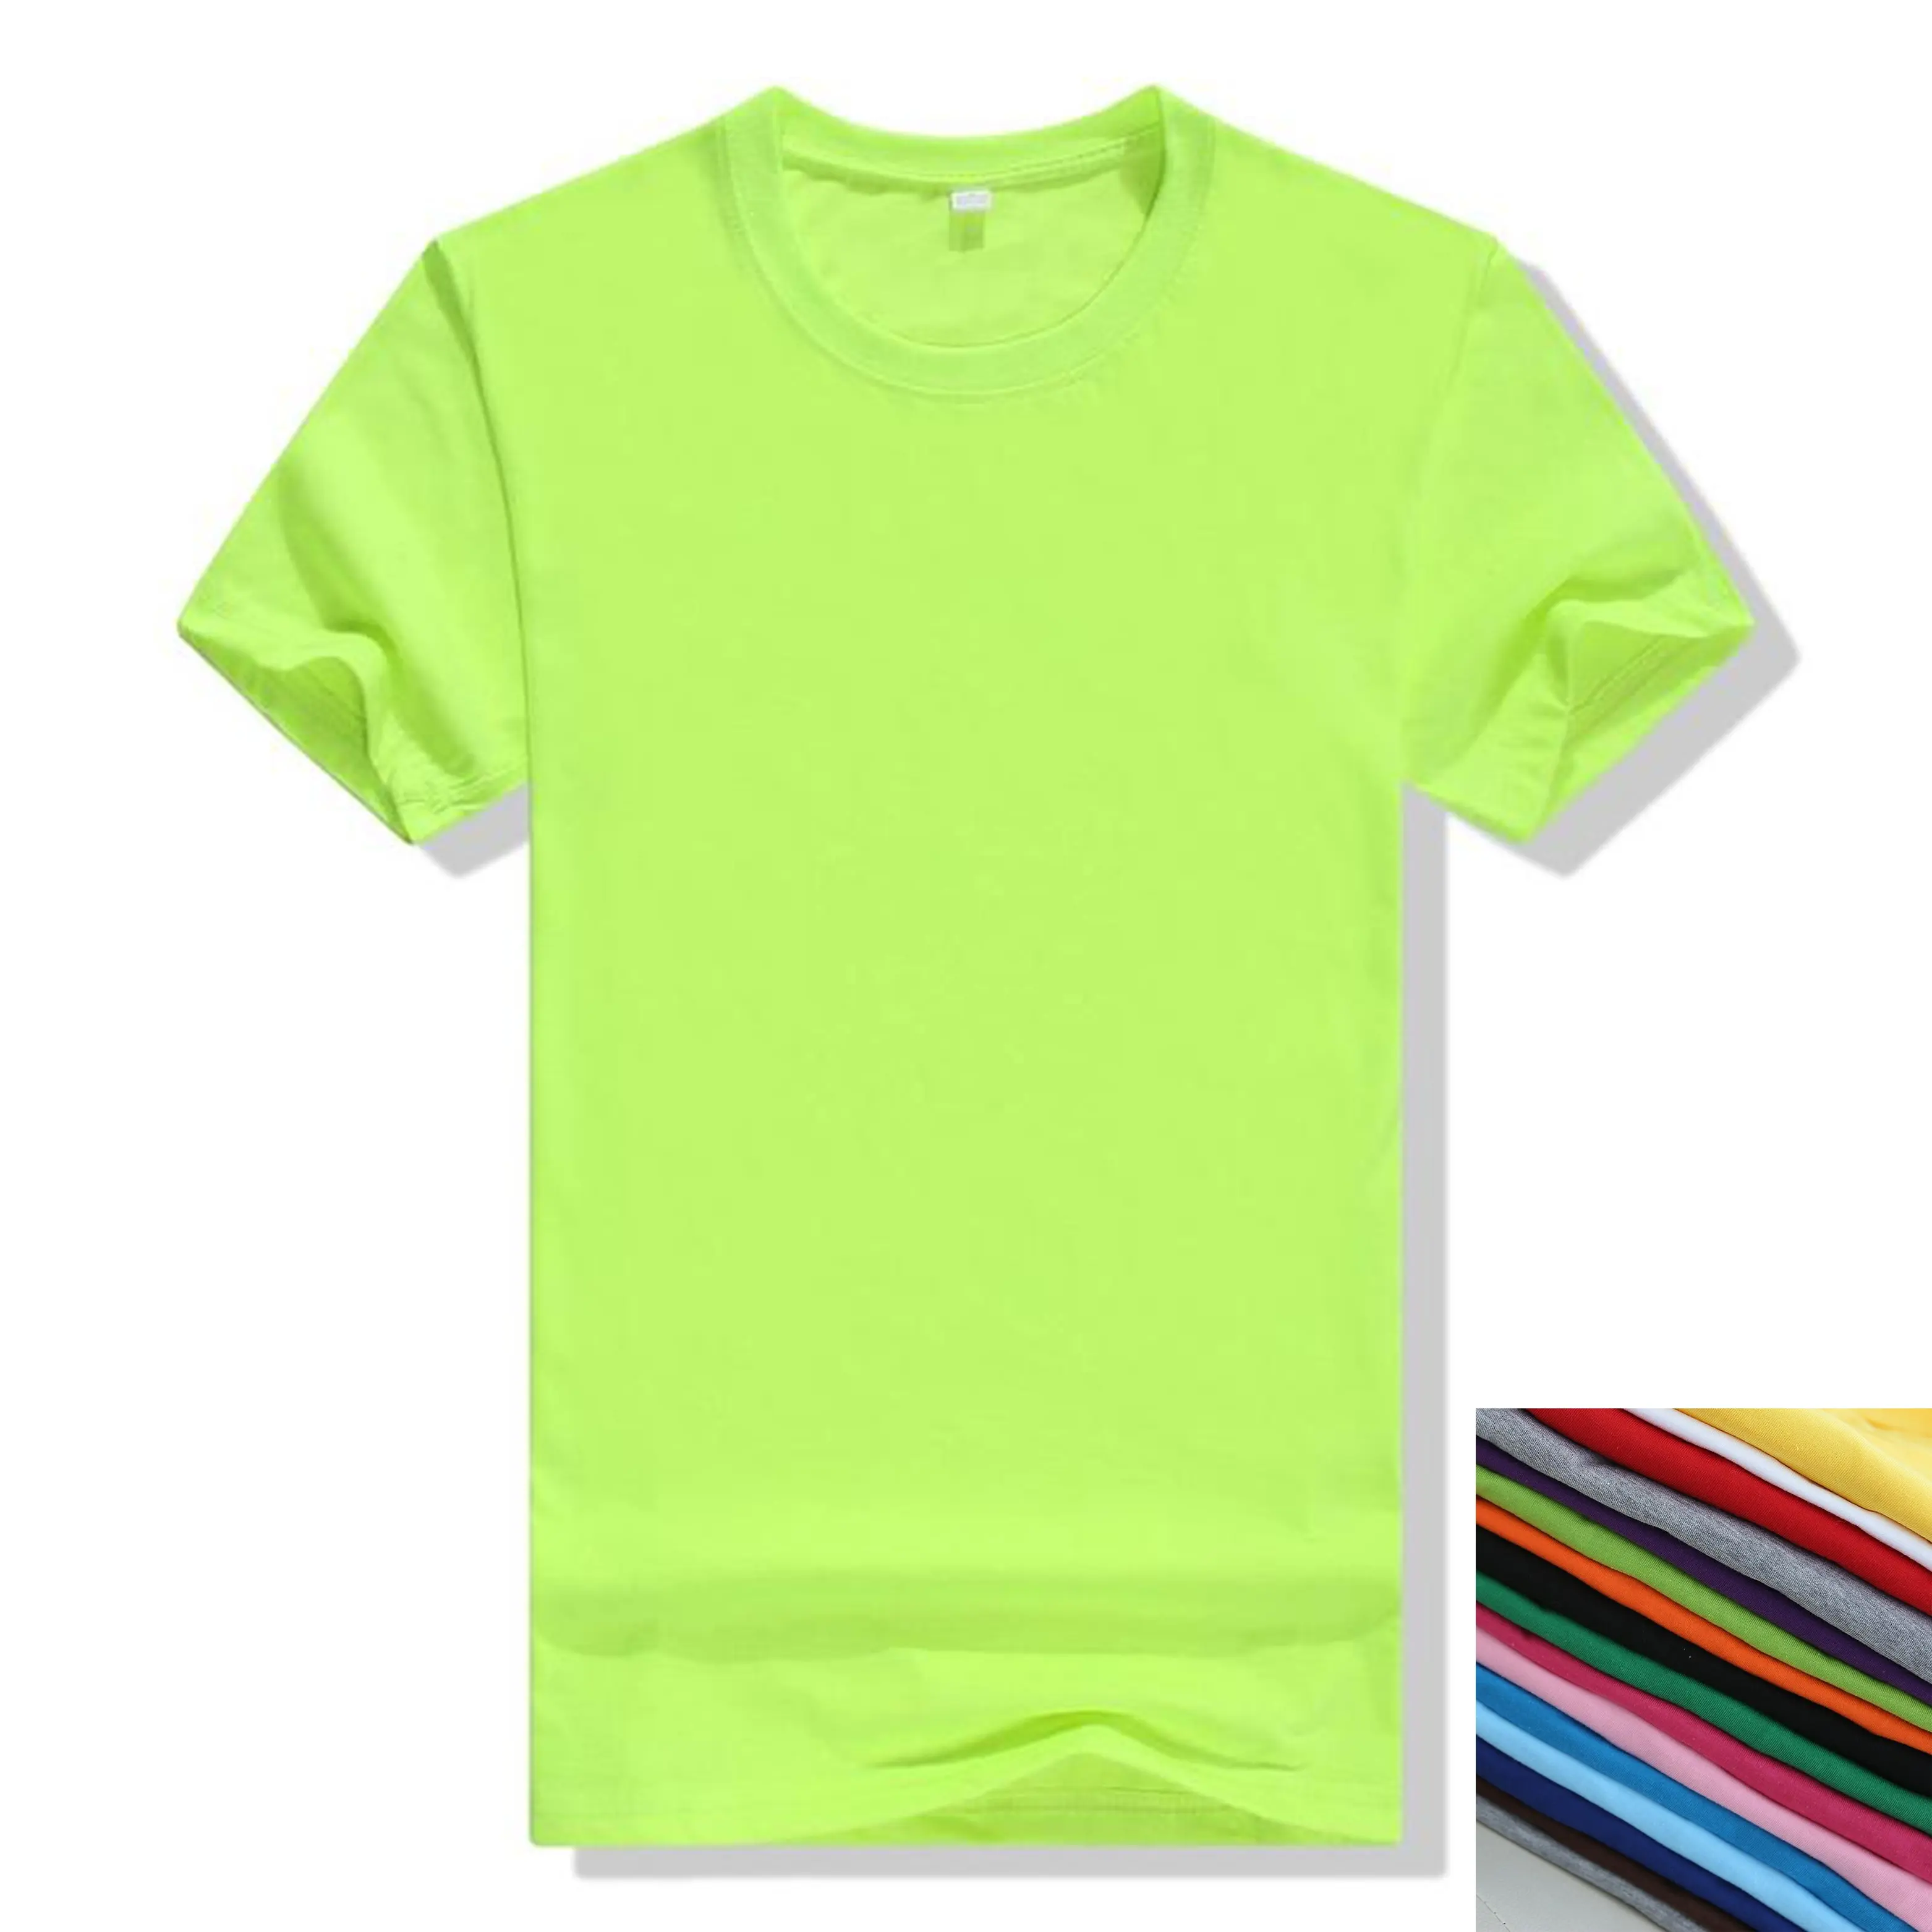 Drestesla टी शर्ट यूनिसेक्स खाली आरामदायक बुना हुआ सादा रंगे सांस टी शर्ट कस्टम लोगो Pskylight कपास प्लस आकार लड़कों Mens